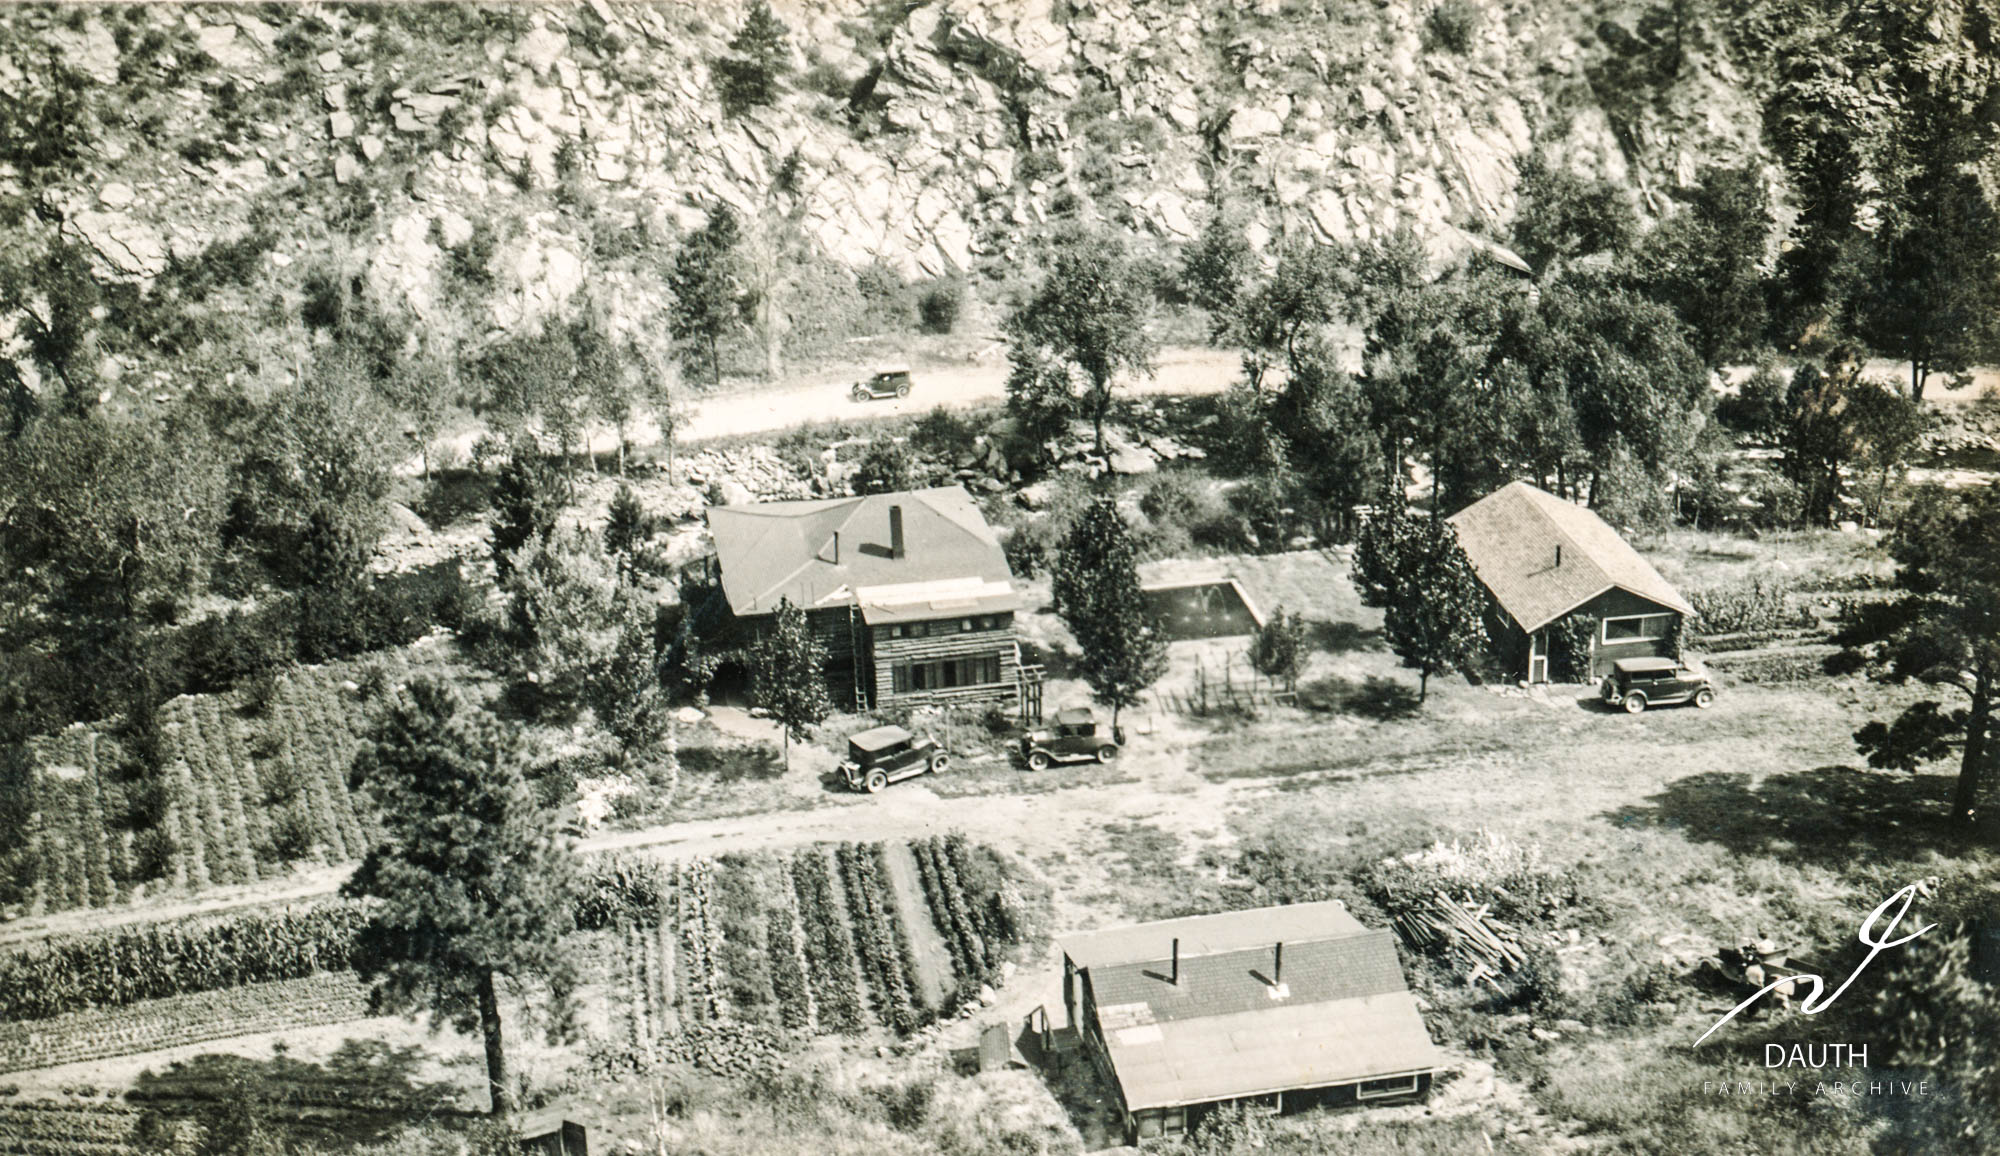 Idlewild Lodge - idlewildlodge.github.io - Circa 1929 - Idlewild Lodge - Looking down at Idlewild from the slo